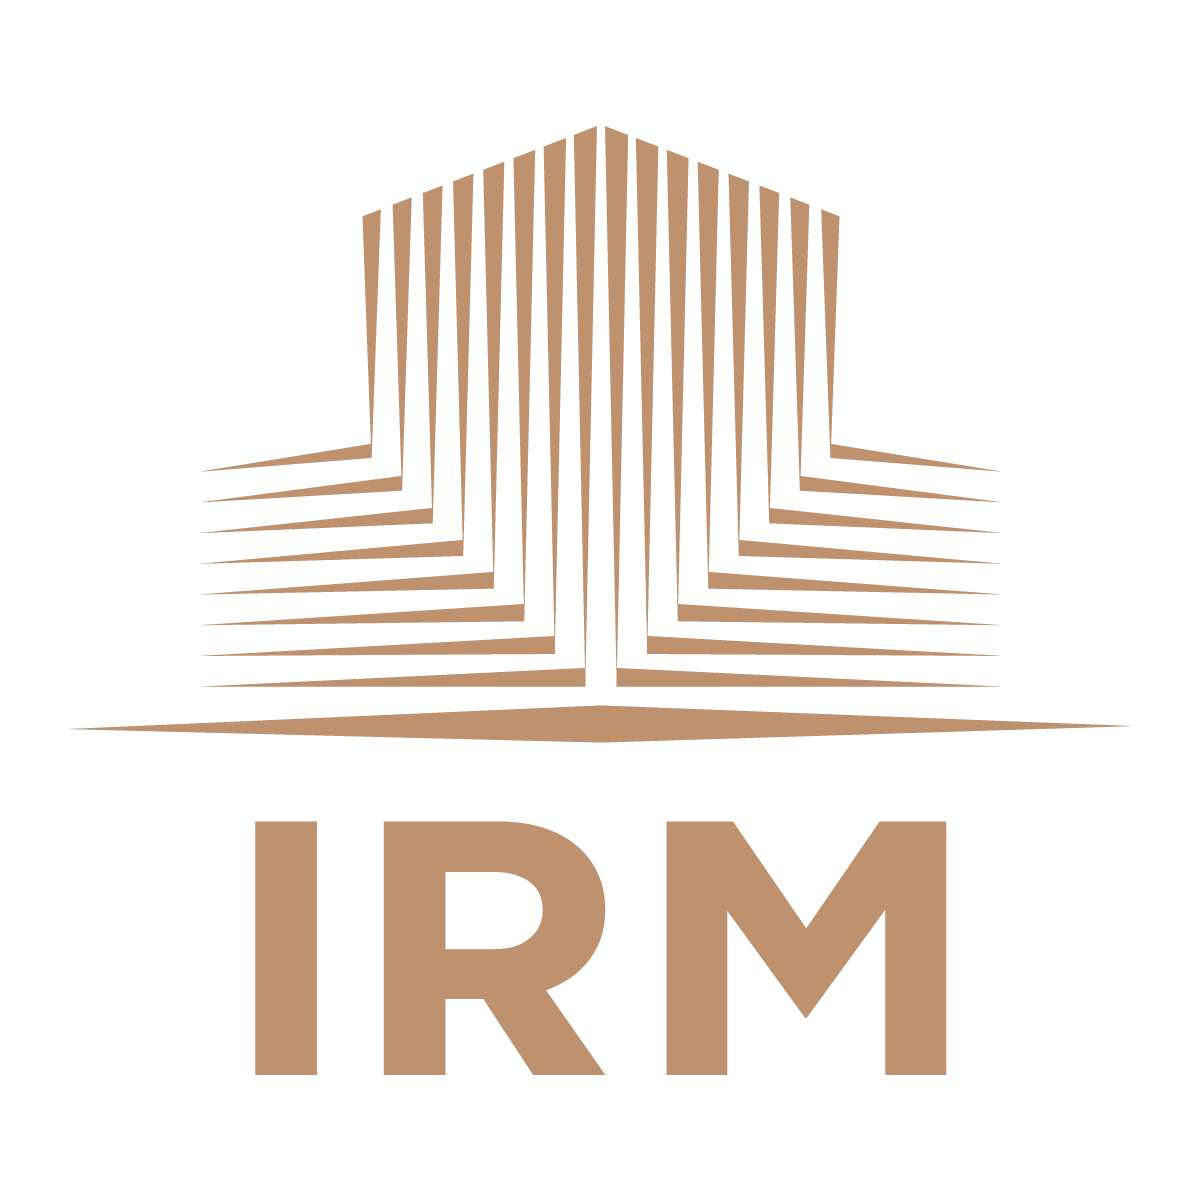 IRM ผู้นำในธุรกิจบริหารจัดการทรัพย์สินแบบครบวงจรภายในประเทศ ด้วยทีมงานมืออาชีพ